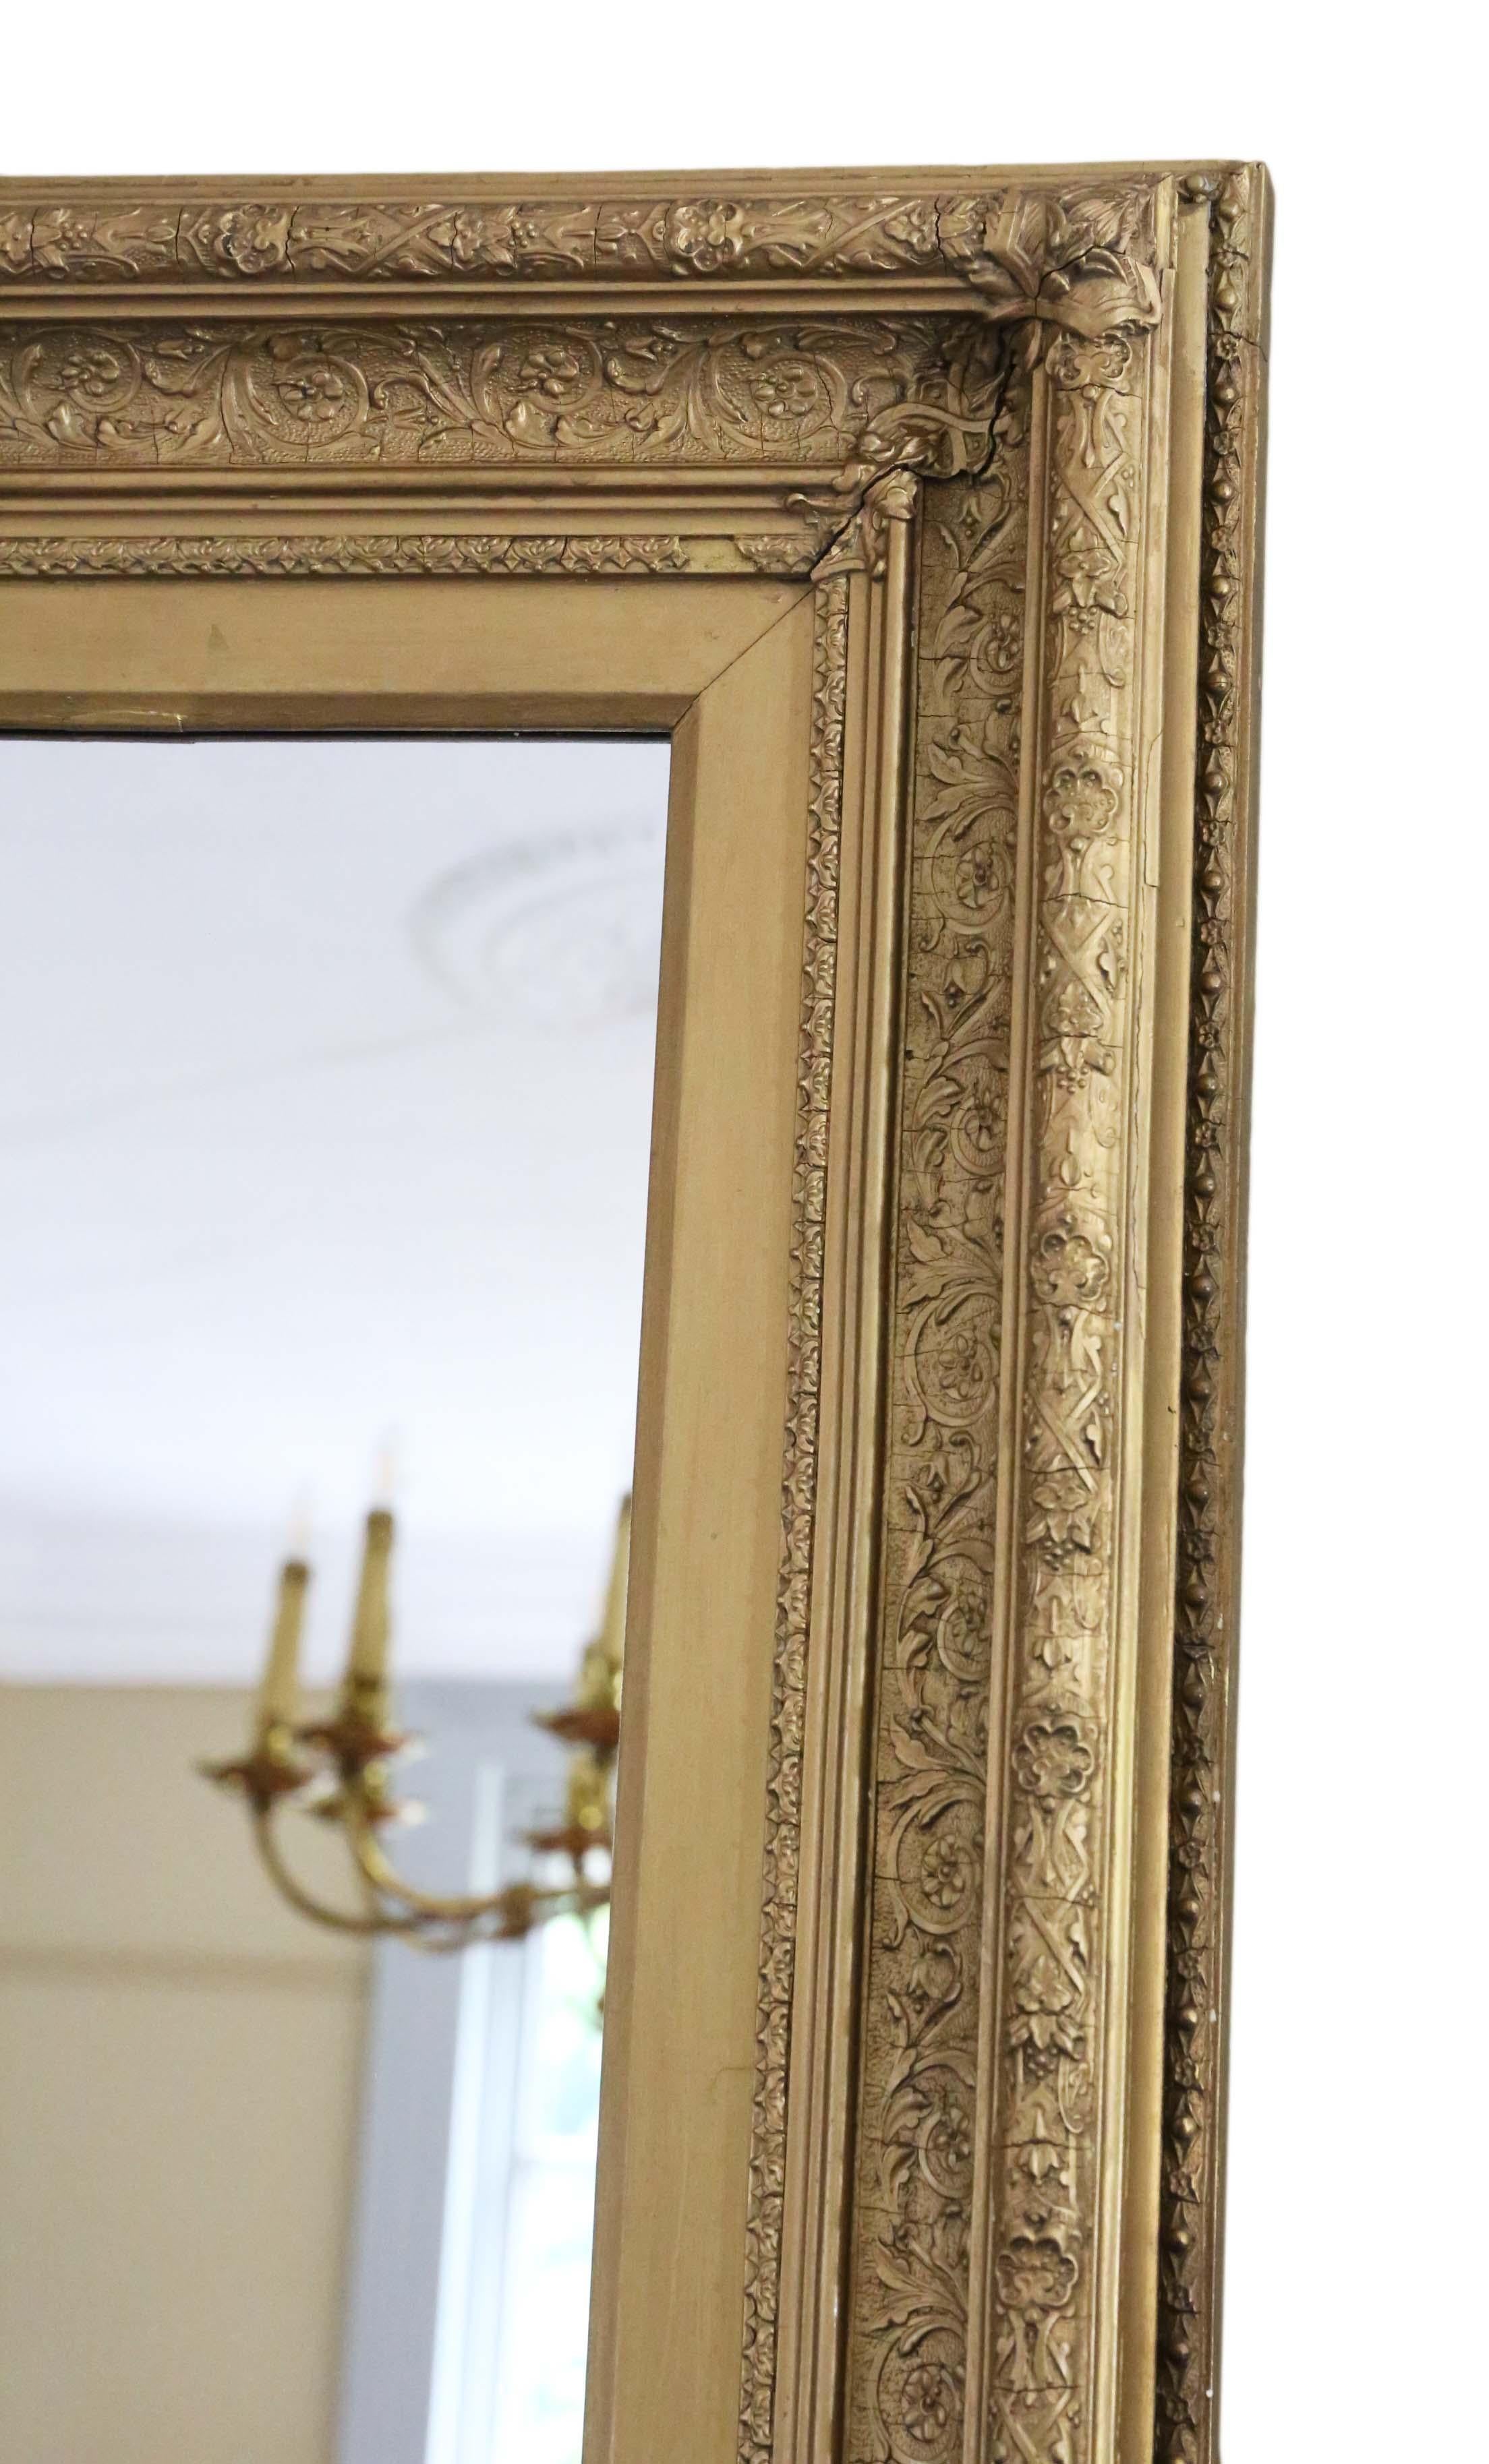 Antique grand miroir mural de qualité du 19ème siècle. Charmante simplicité, charme et élégance. Peut être accroché en portrait ou en paysage.

Une trouvaille impressionnante, qui serait superbe dans le bon endroit. Pas de joints lâches ou de vers à